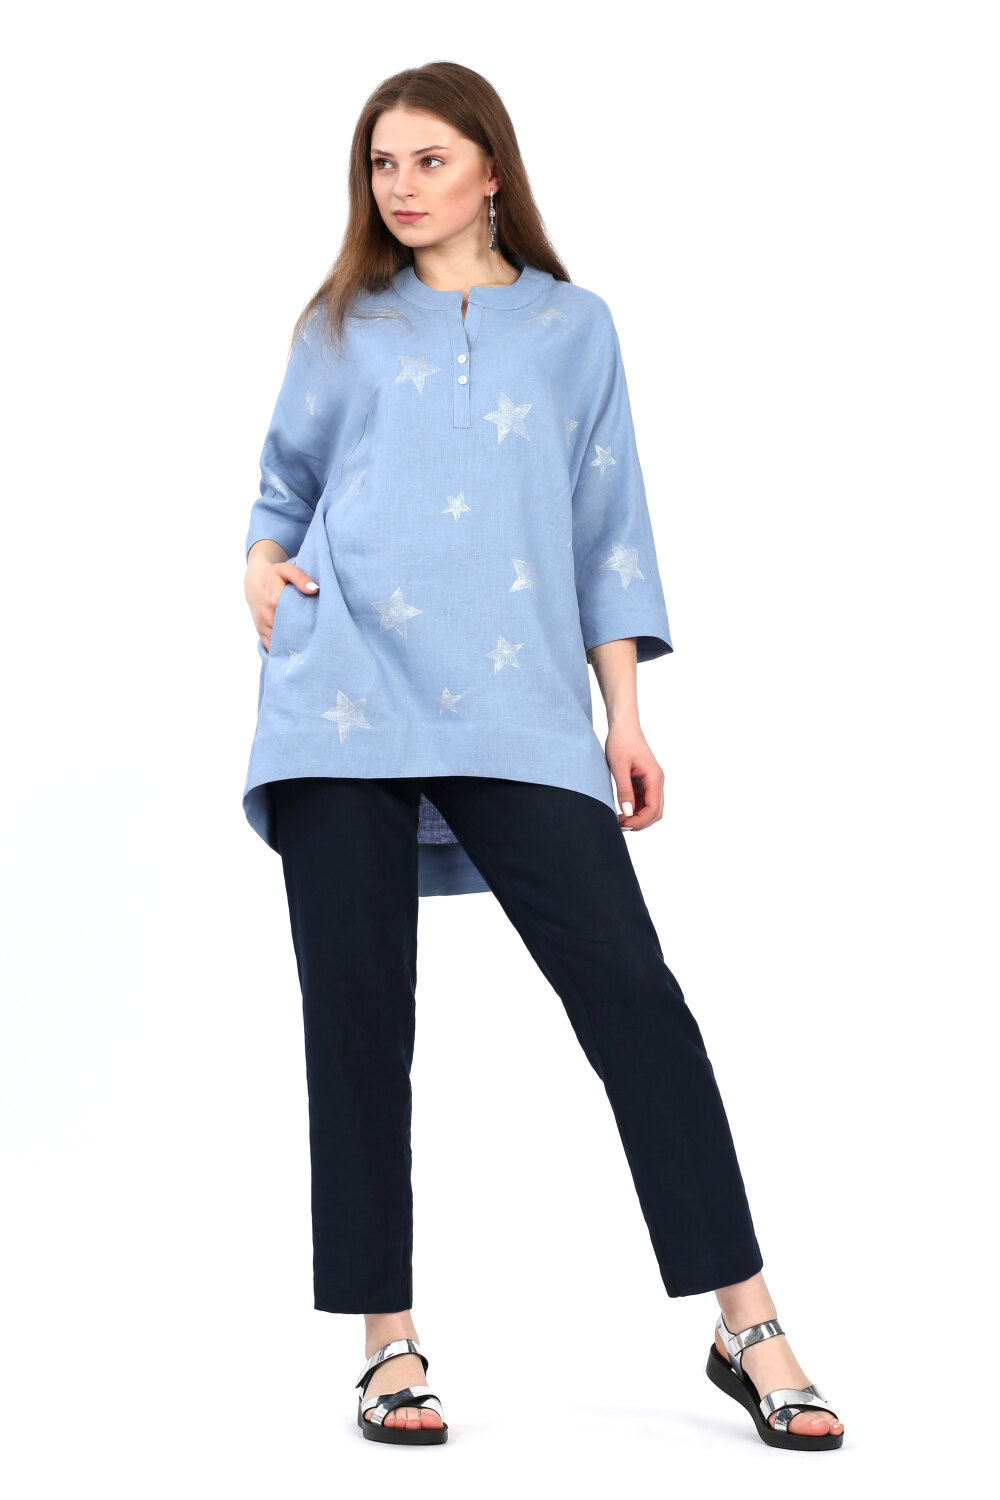 Блузка женская "Звёзды" модель 110/2 голубая незабудка